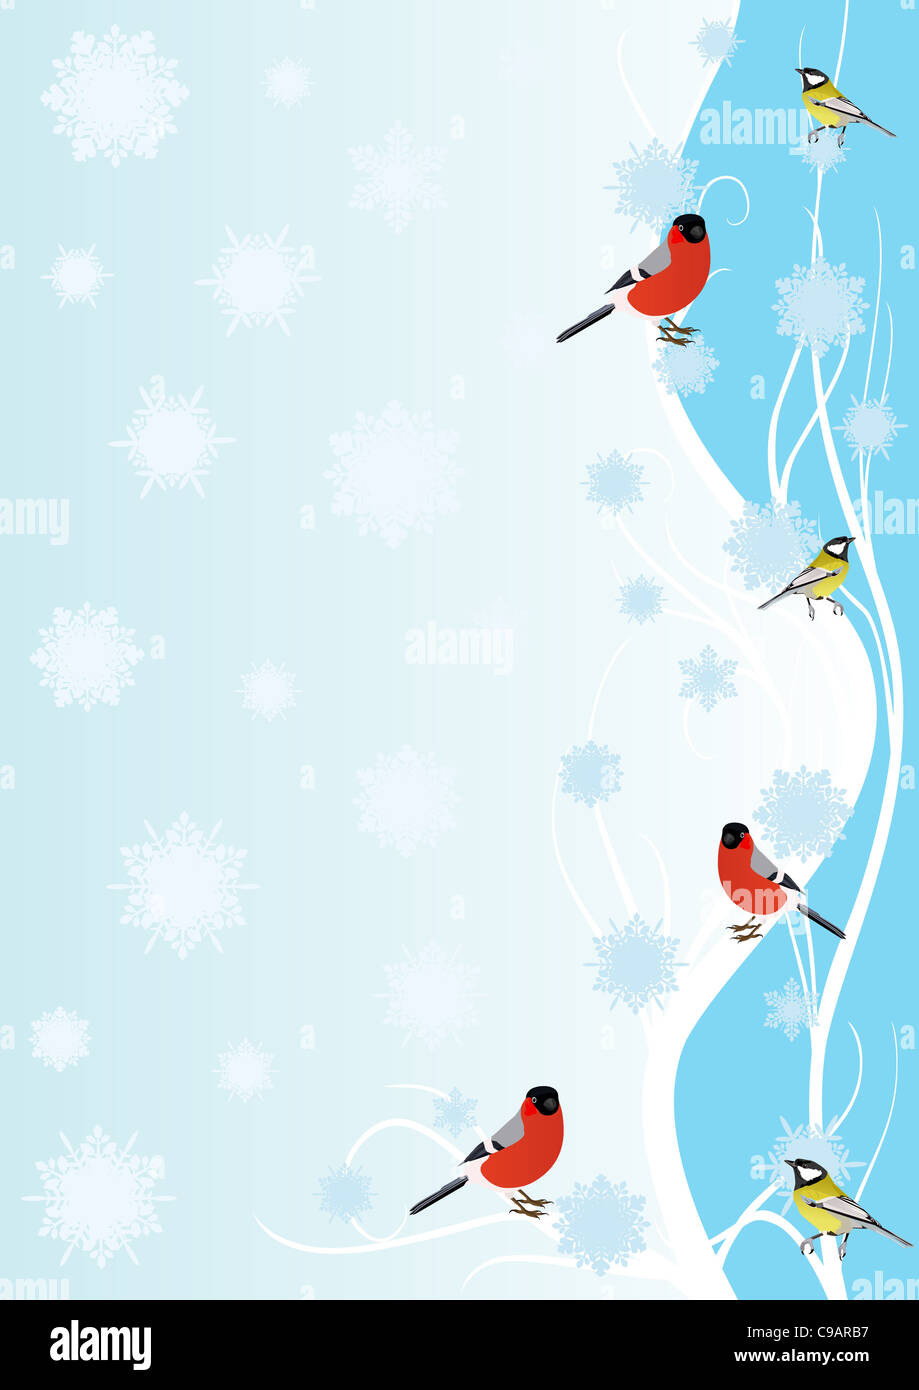 Зимняя рамка вертикальная с птичками